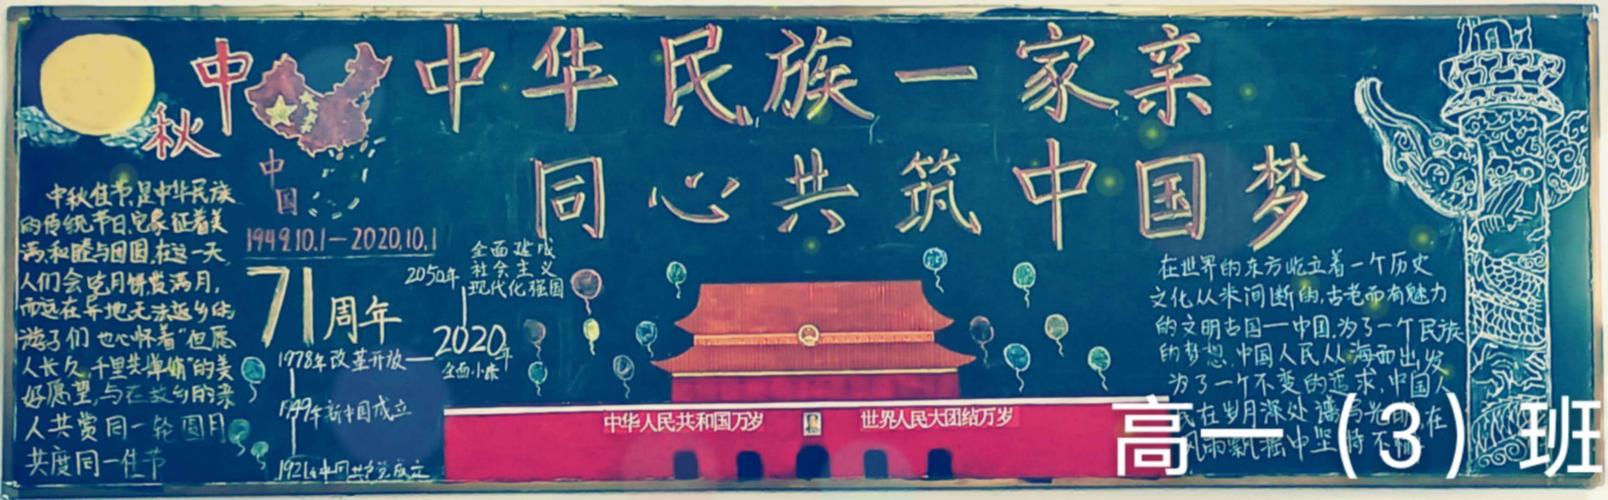 民族一家亲同心共筑中国梦主题教育系列活动高一年级黑板报专刊